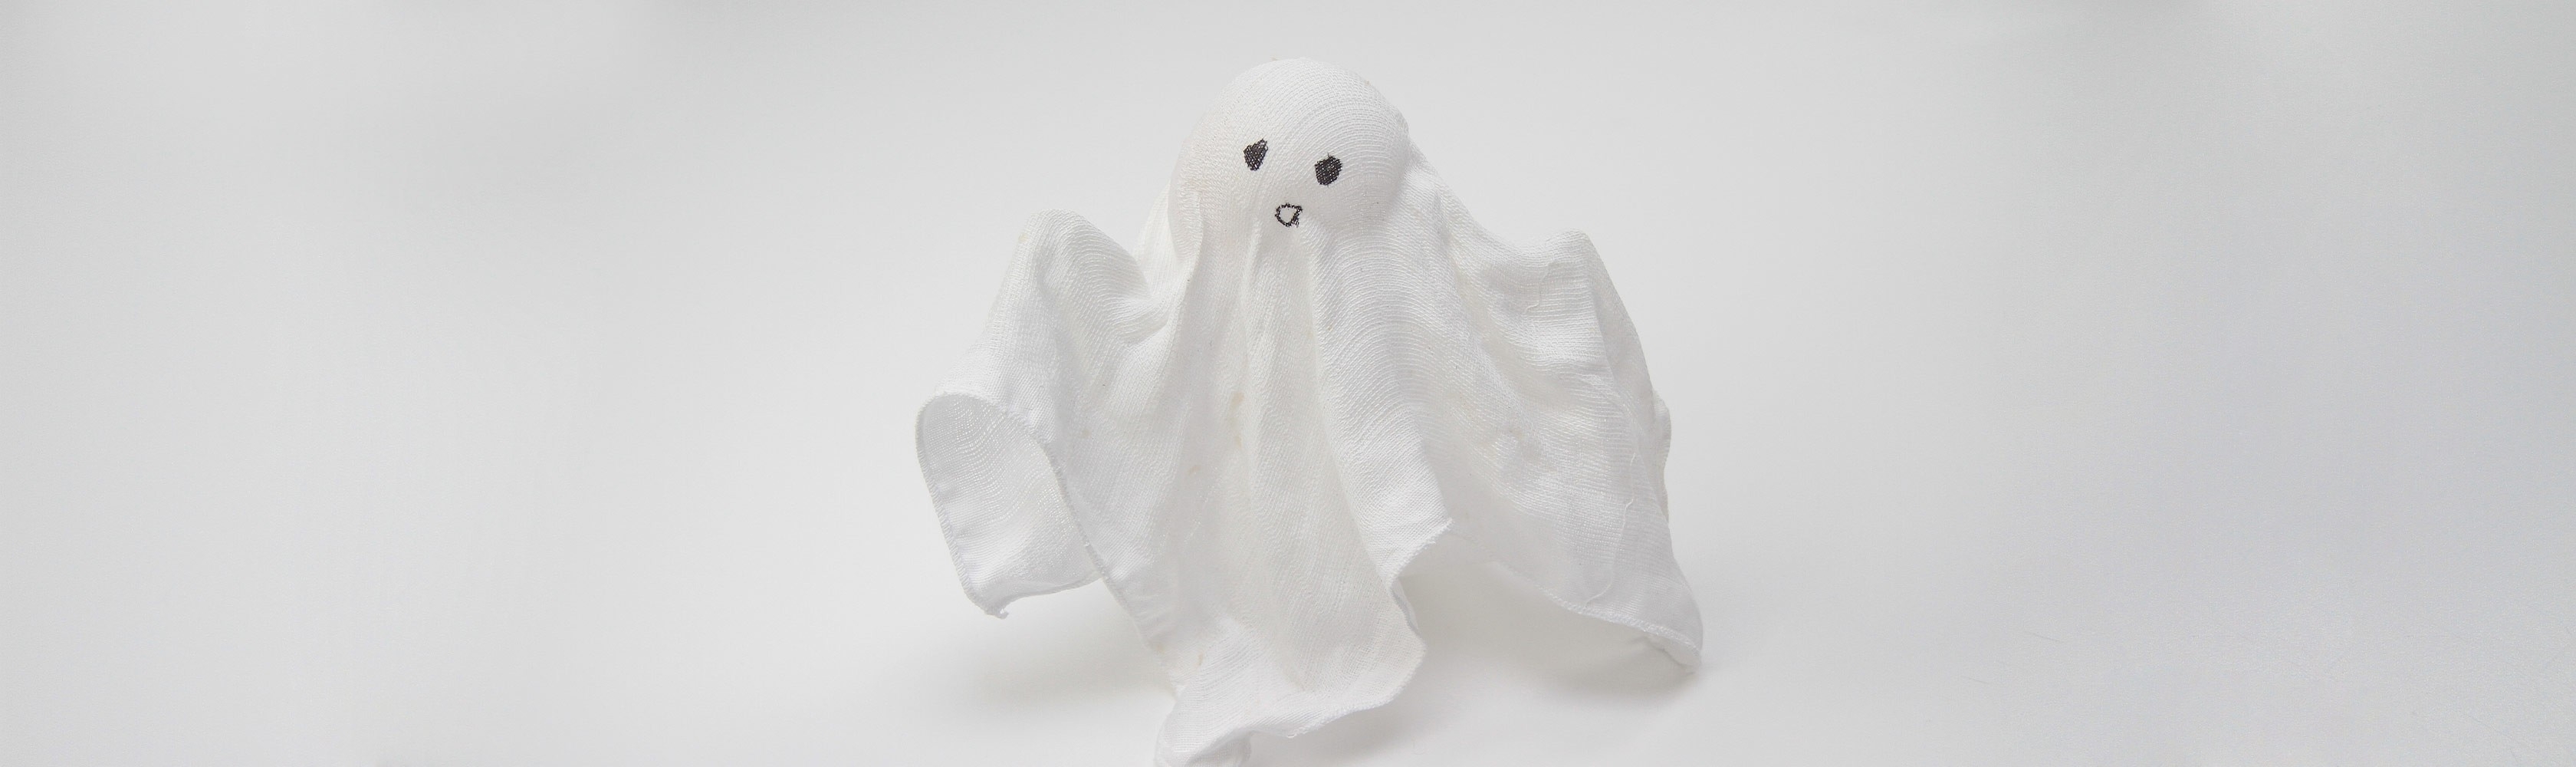 Geister-Deko für Halloween